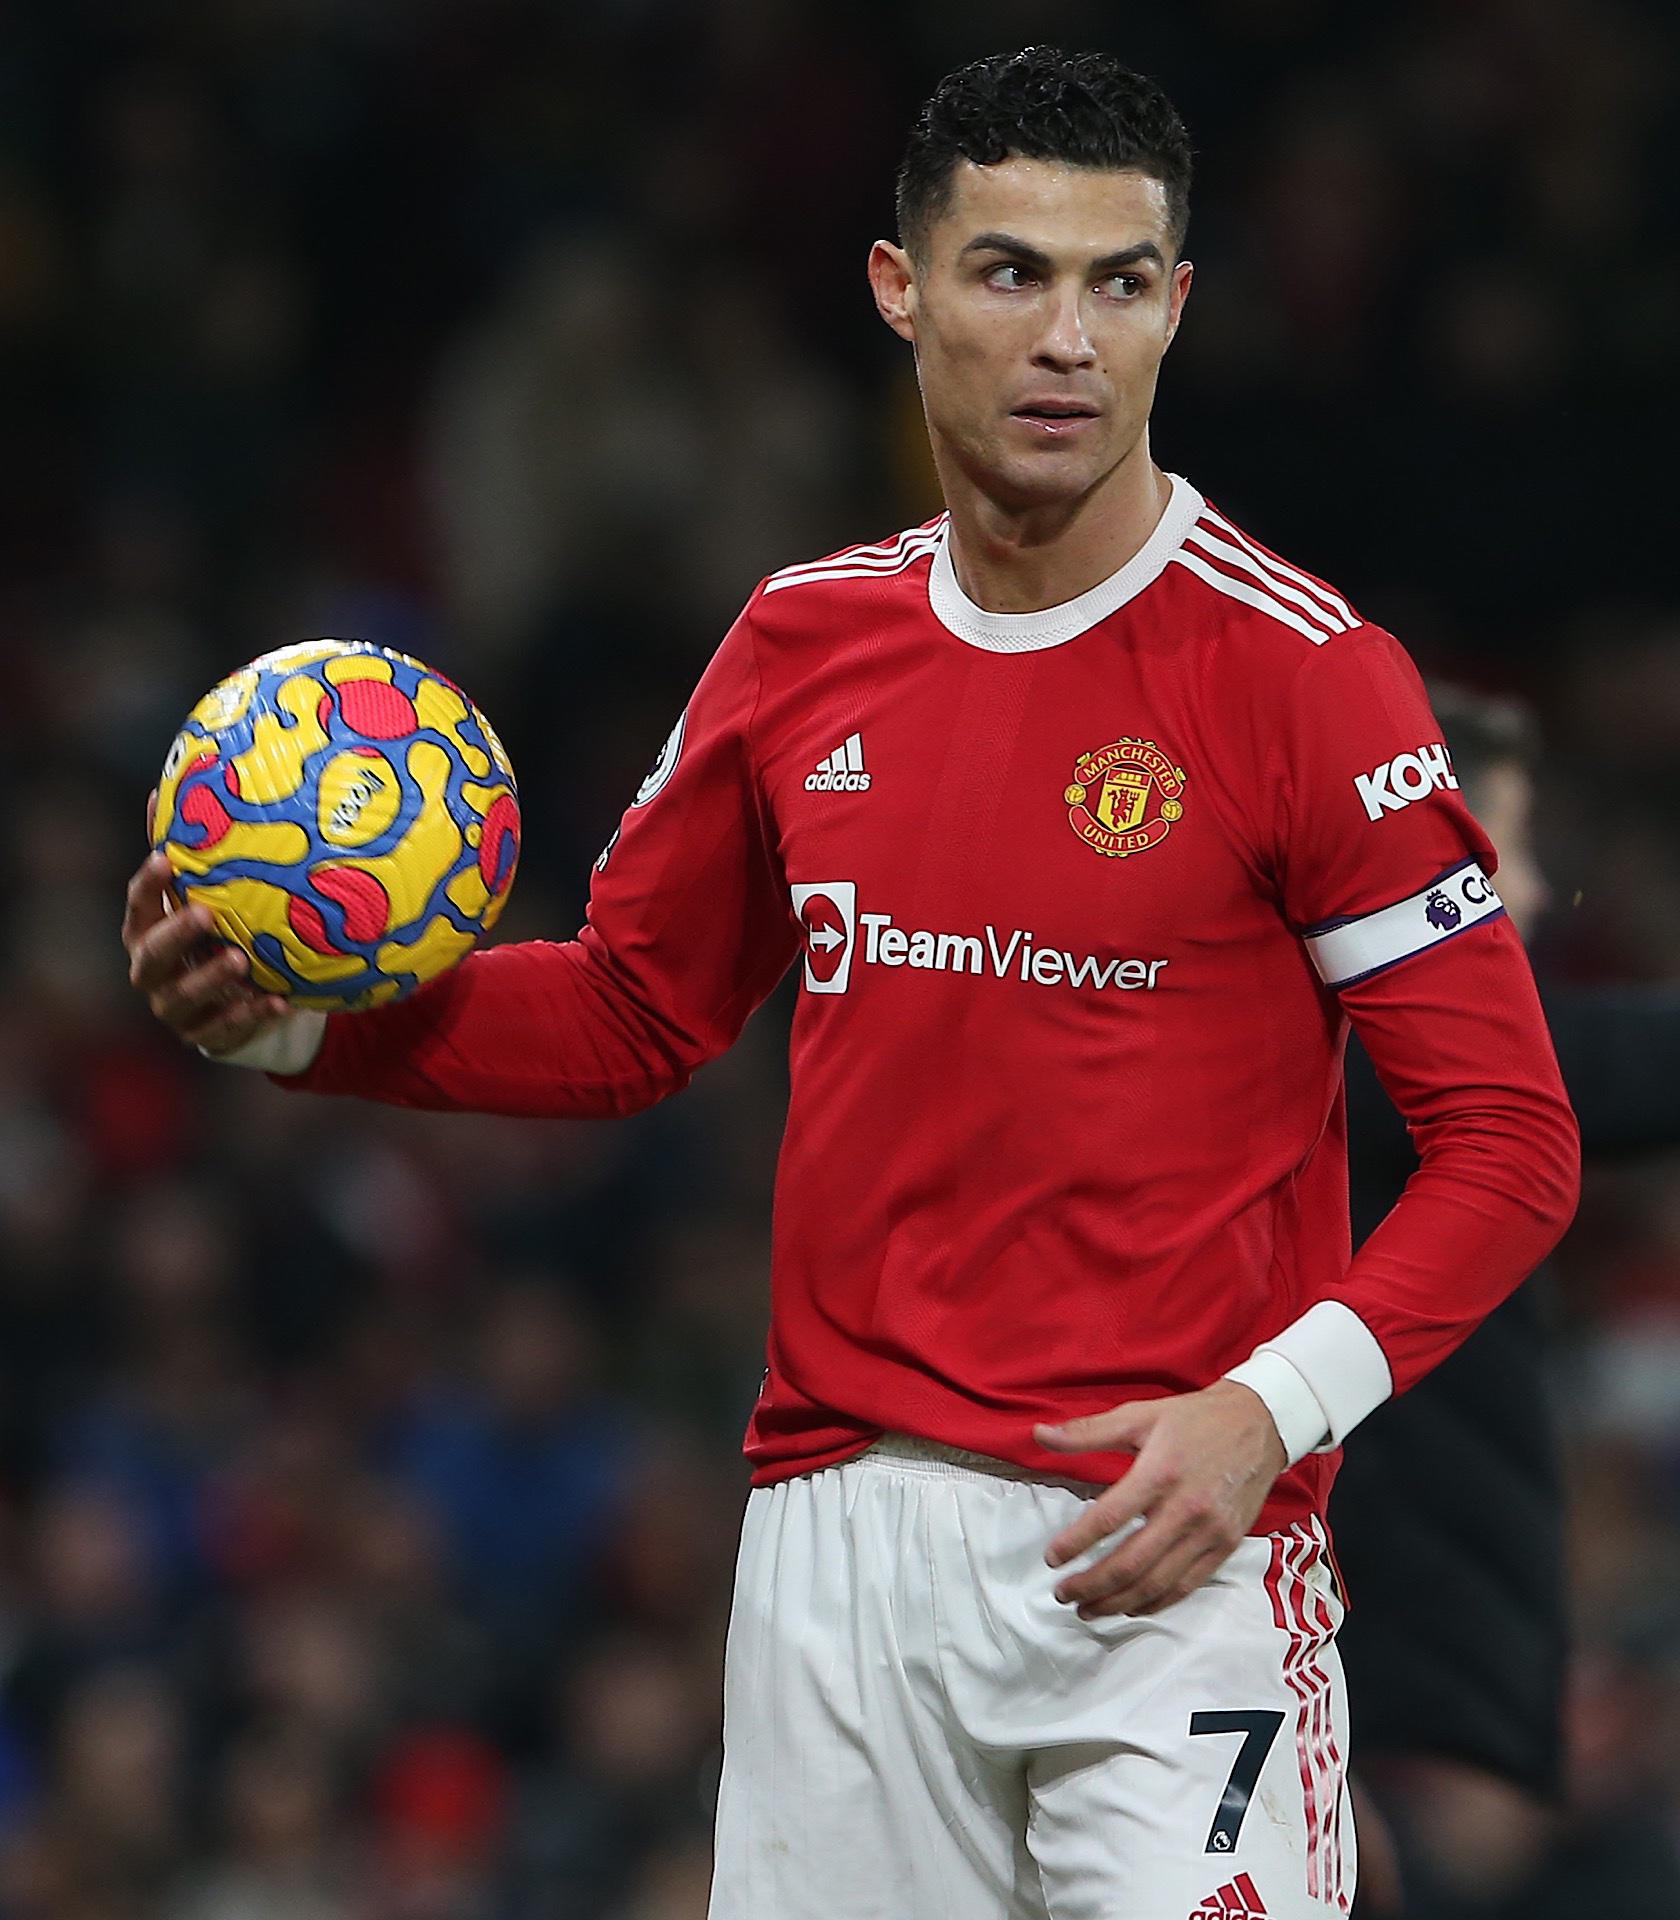 De mal a peor: La bronca que tuvo De Gea con Cristiano Ronaldo y el lío por la capitanía en el Manchester United